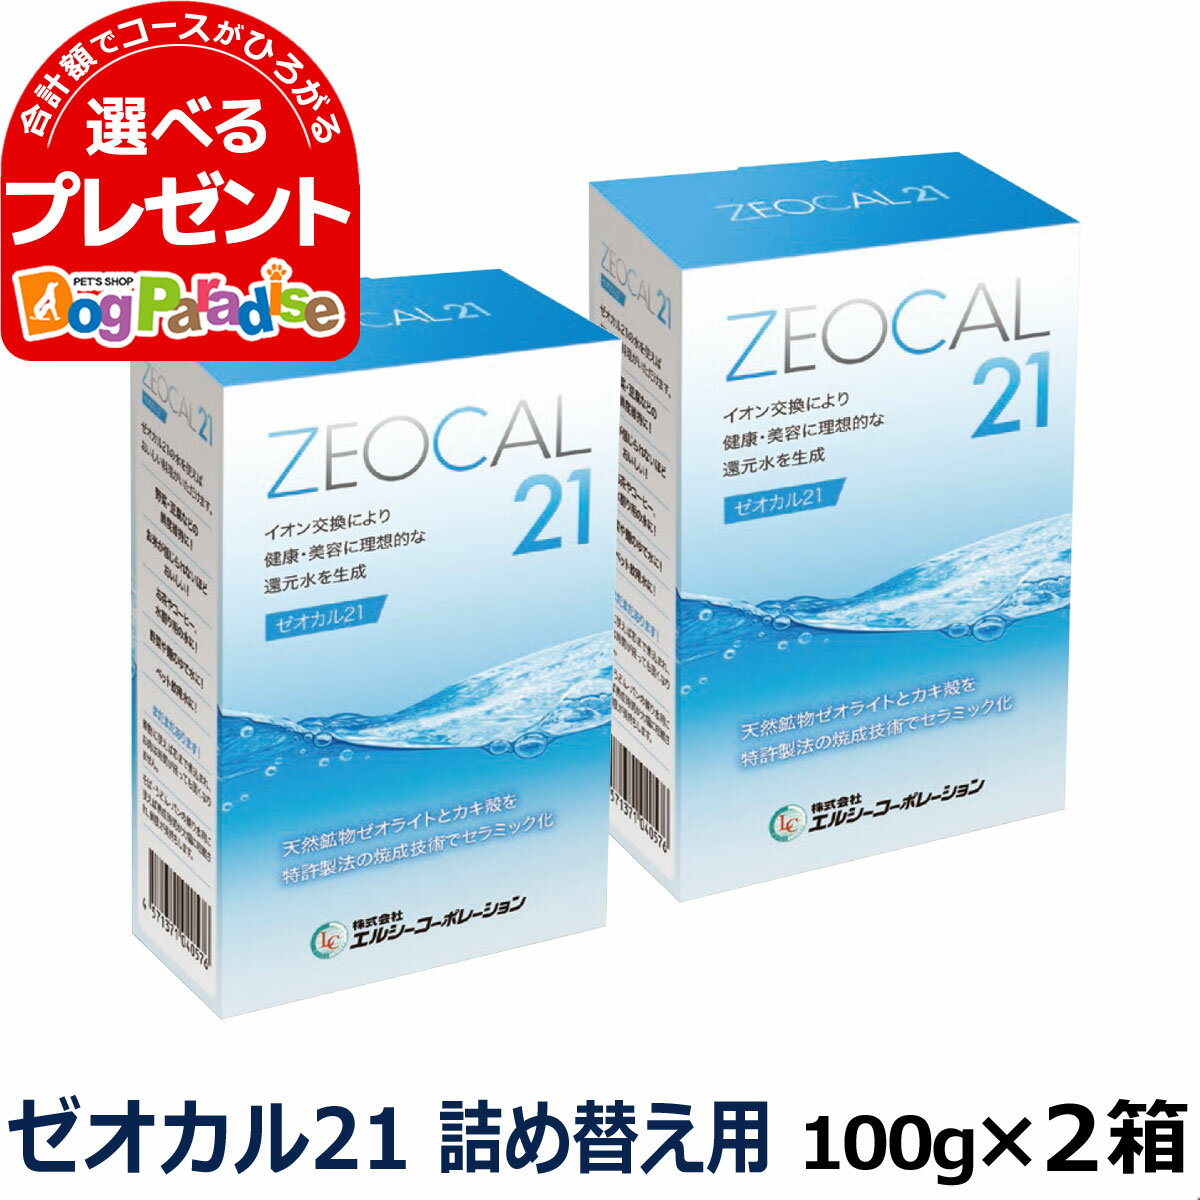 ゼオカル21 100g 2箱セット(ゼオライ